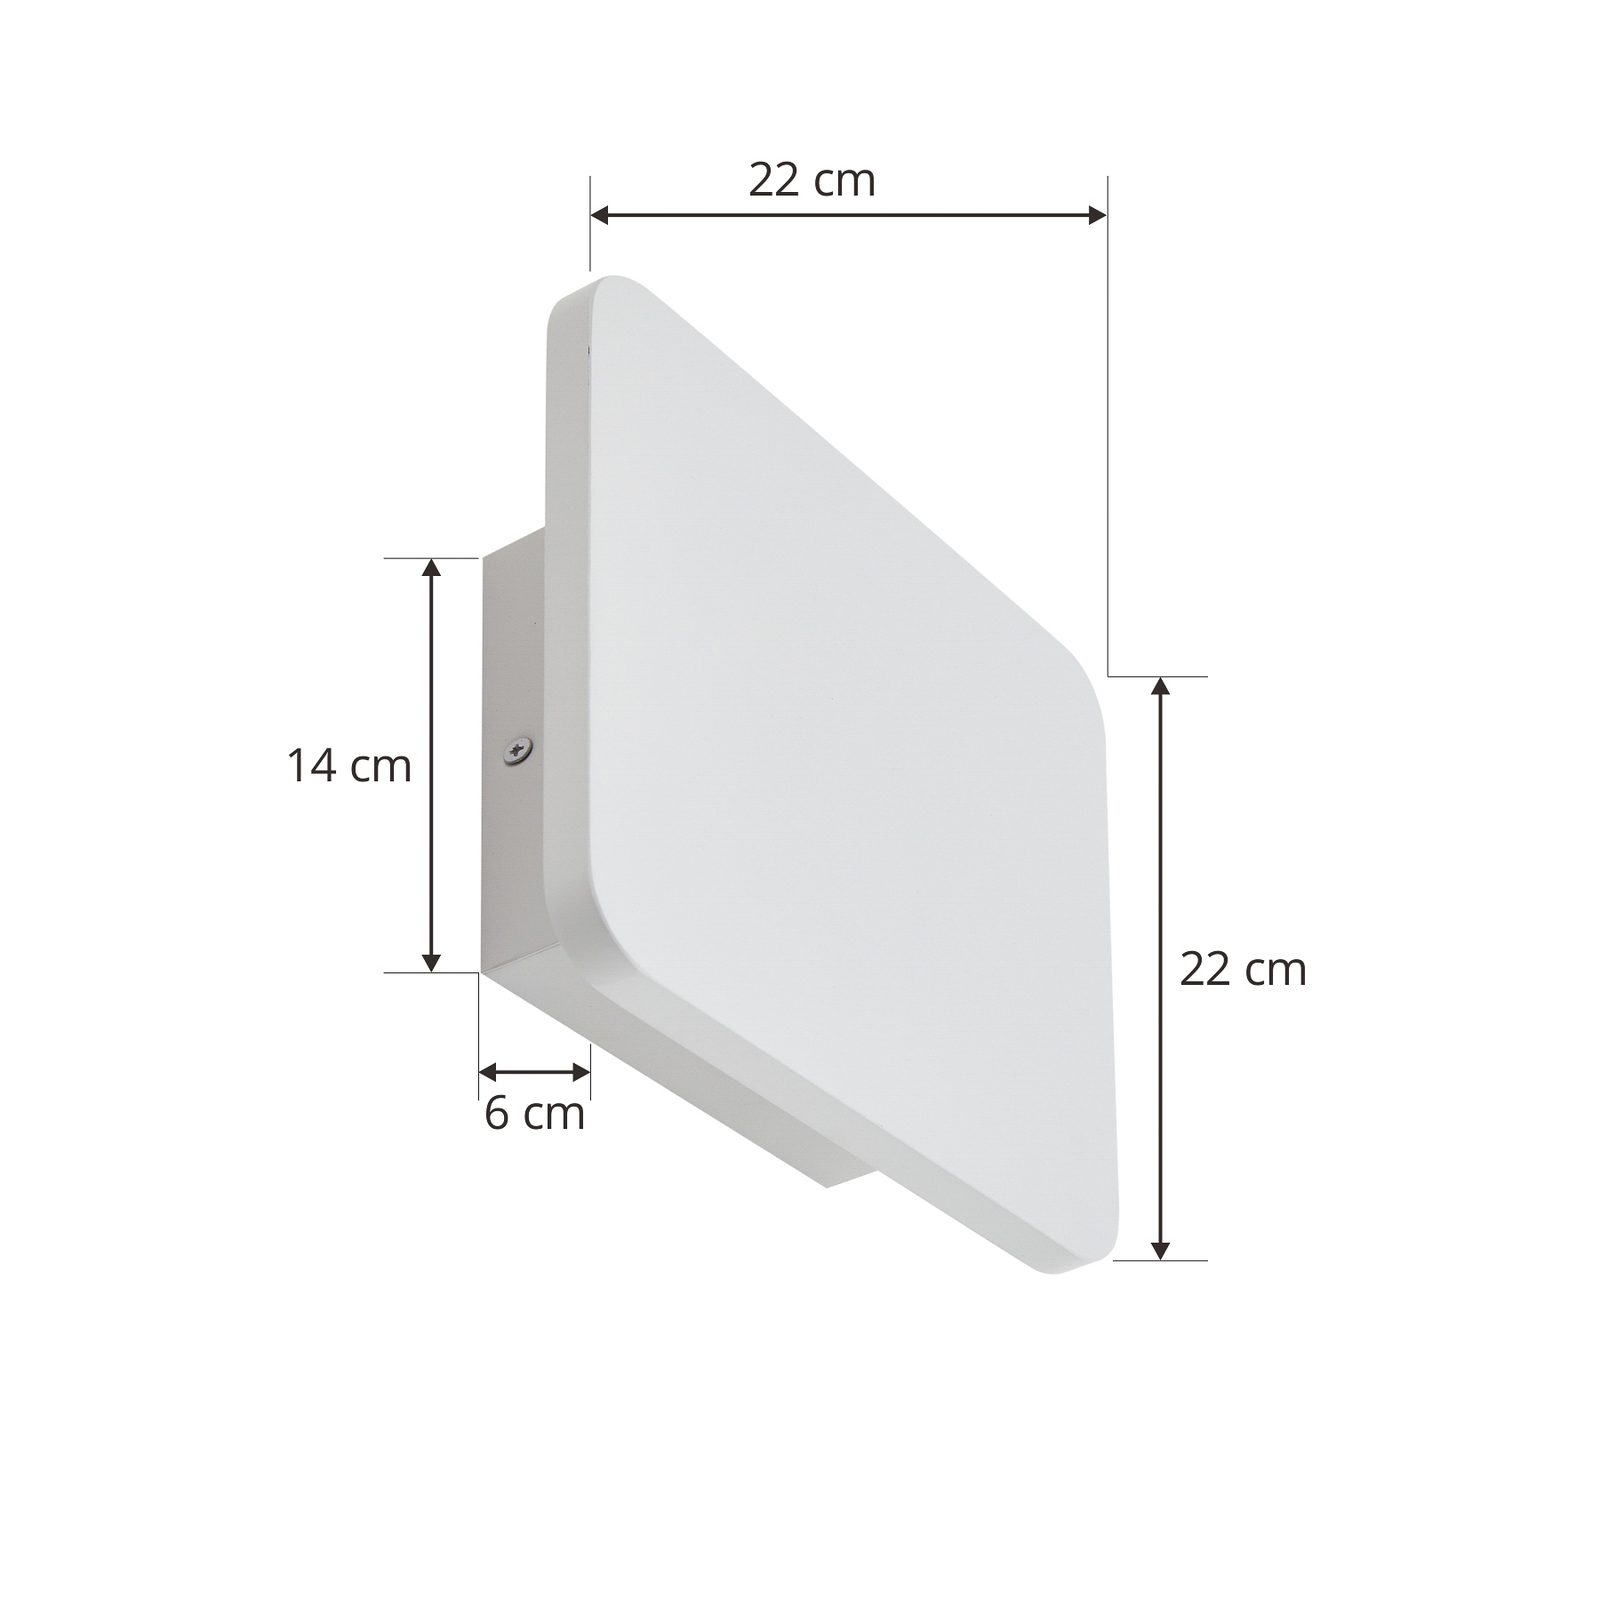 Lucande LED zidna svjetiljka Elrik, bijela, 22 cm visoka, metal